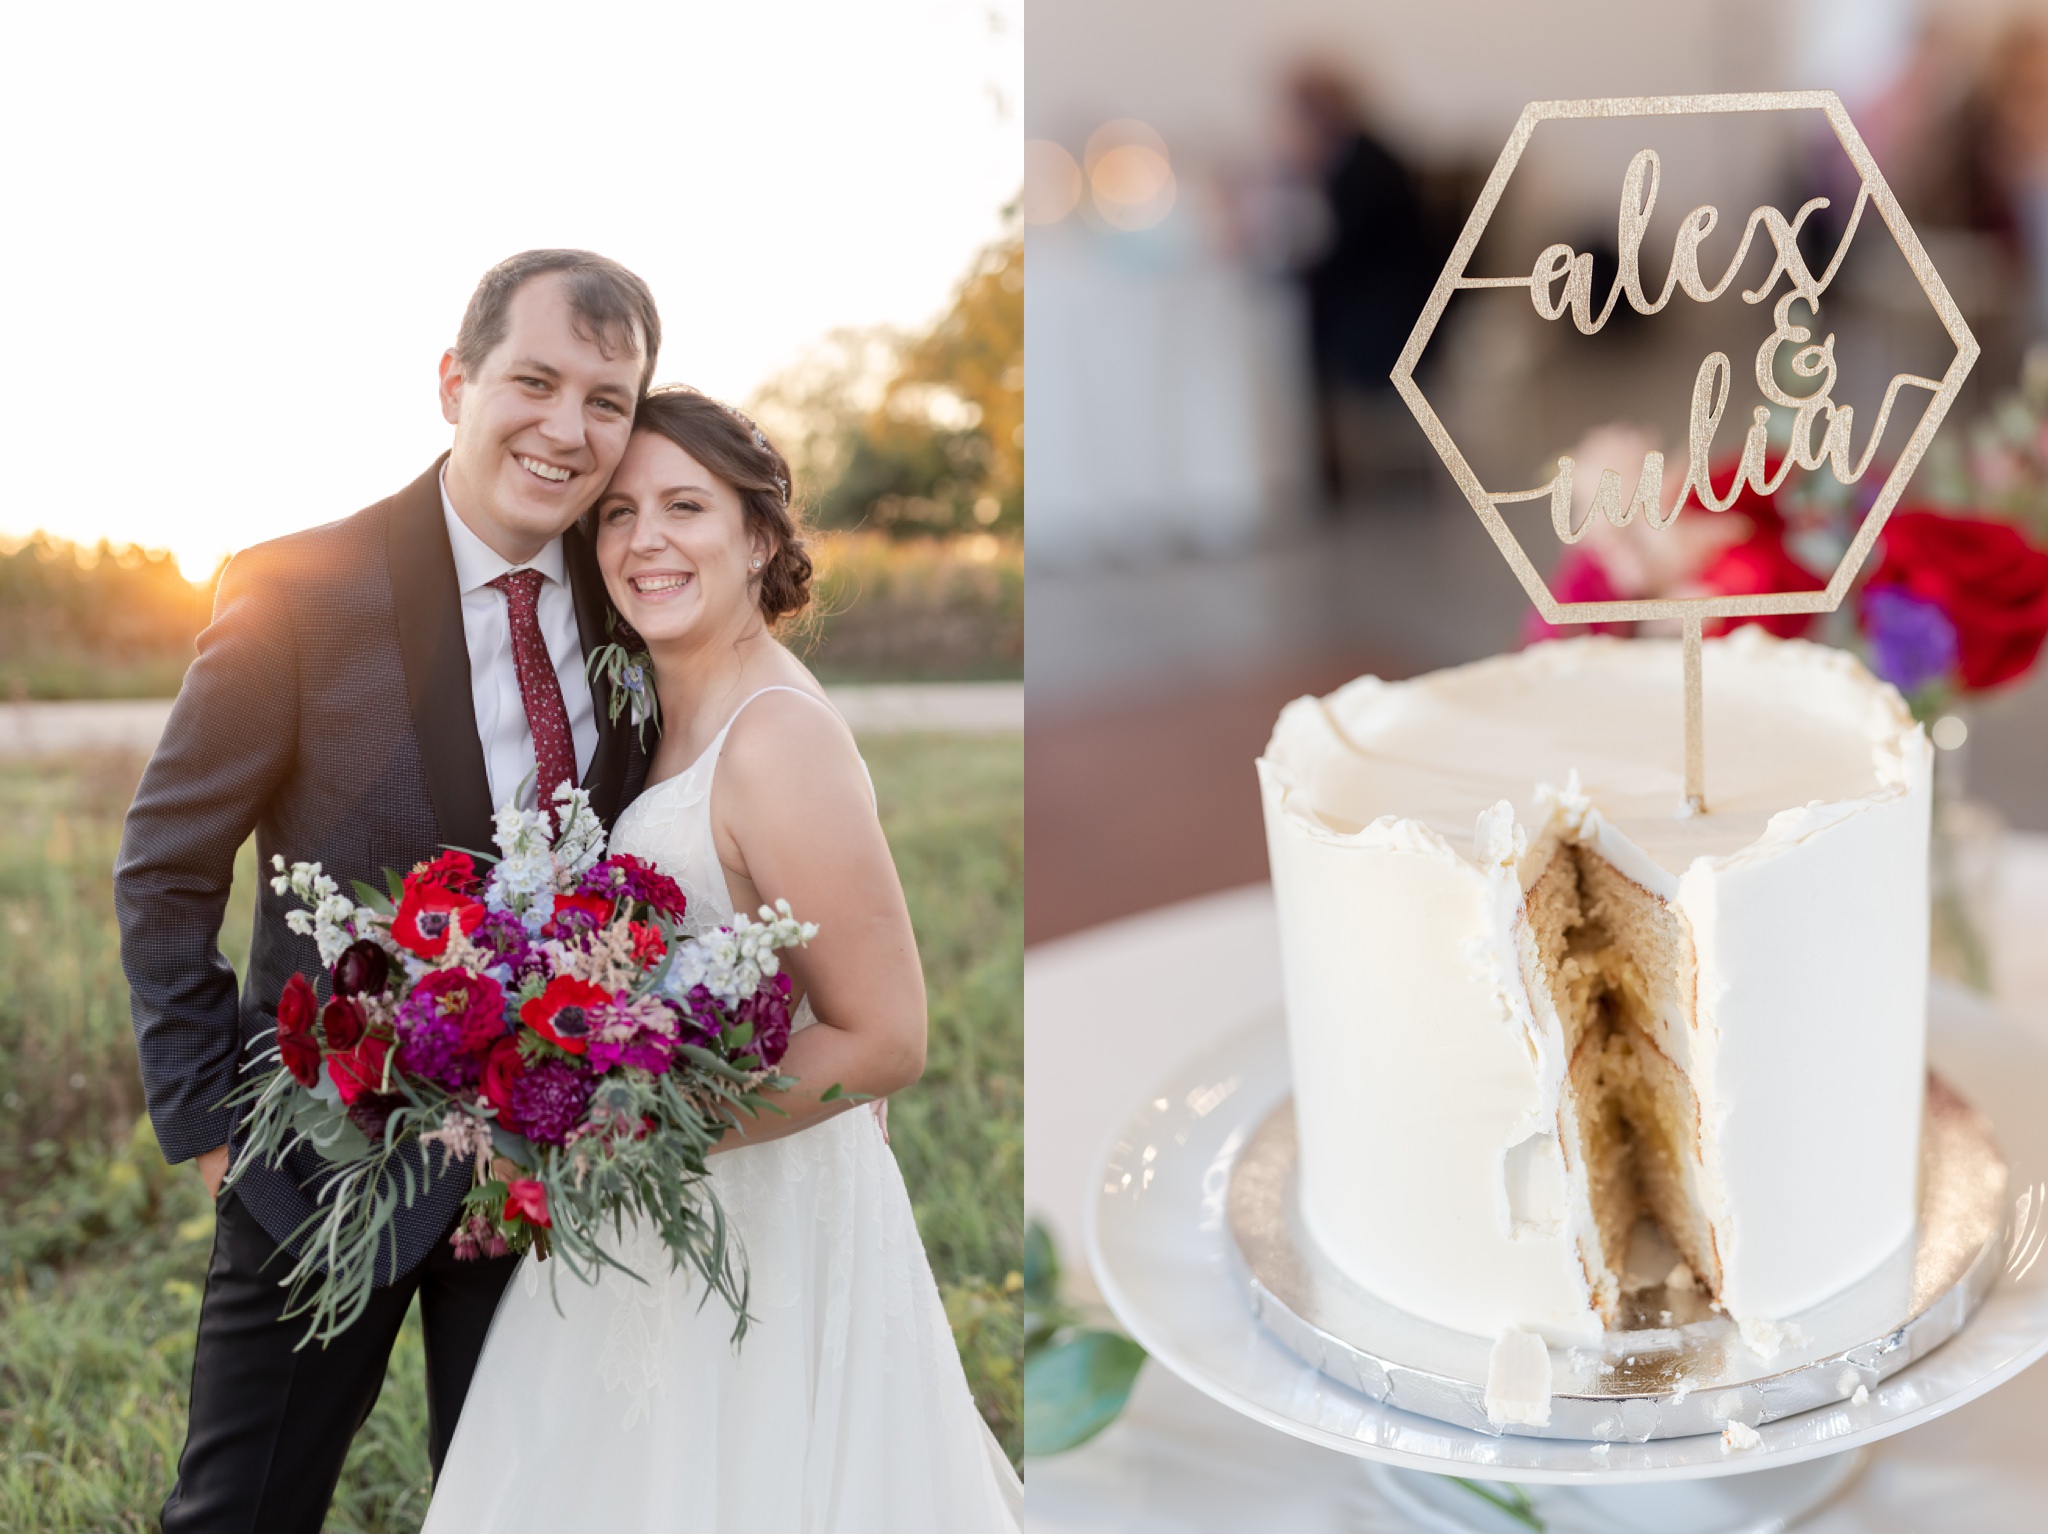 wedding-cake-bloom-bake-shop